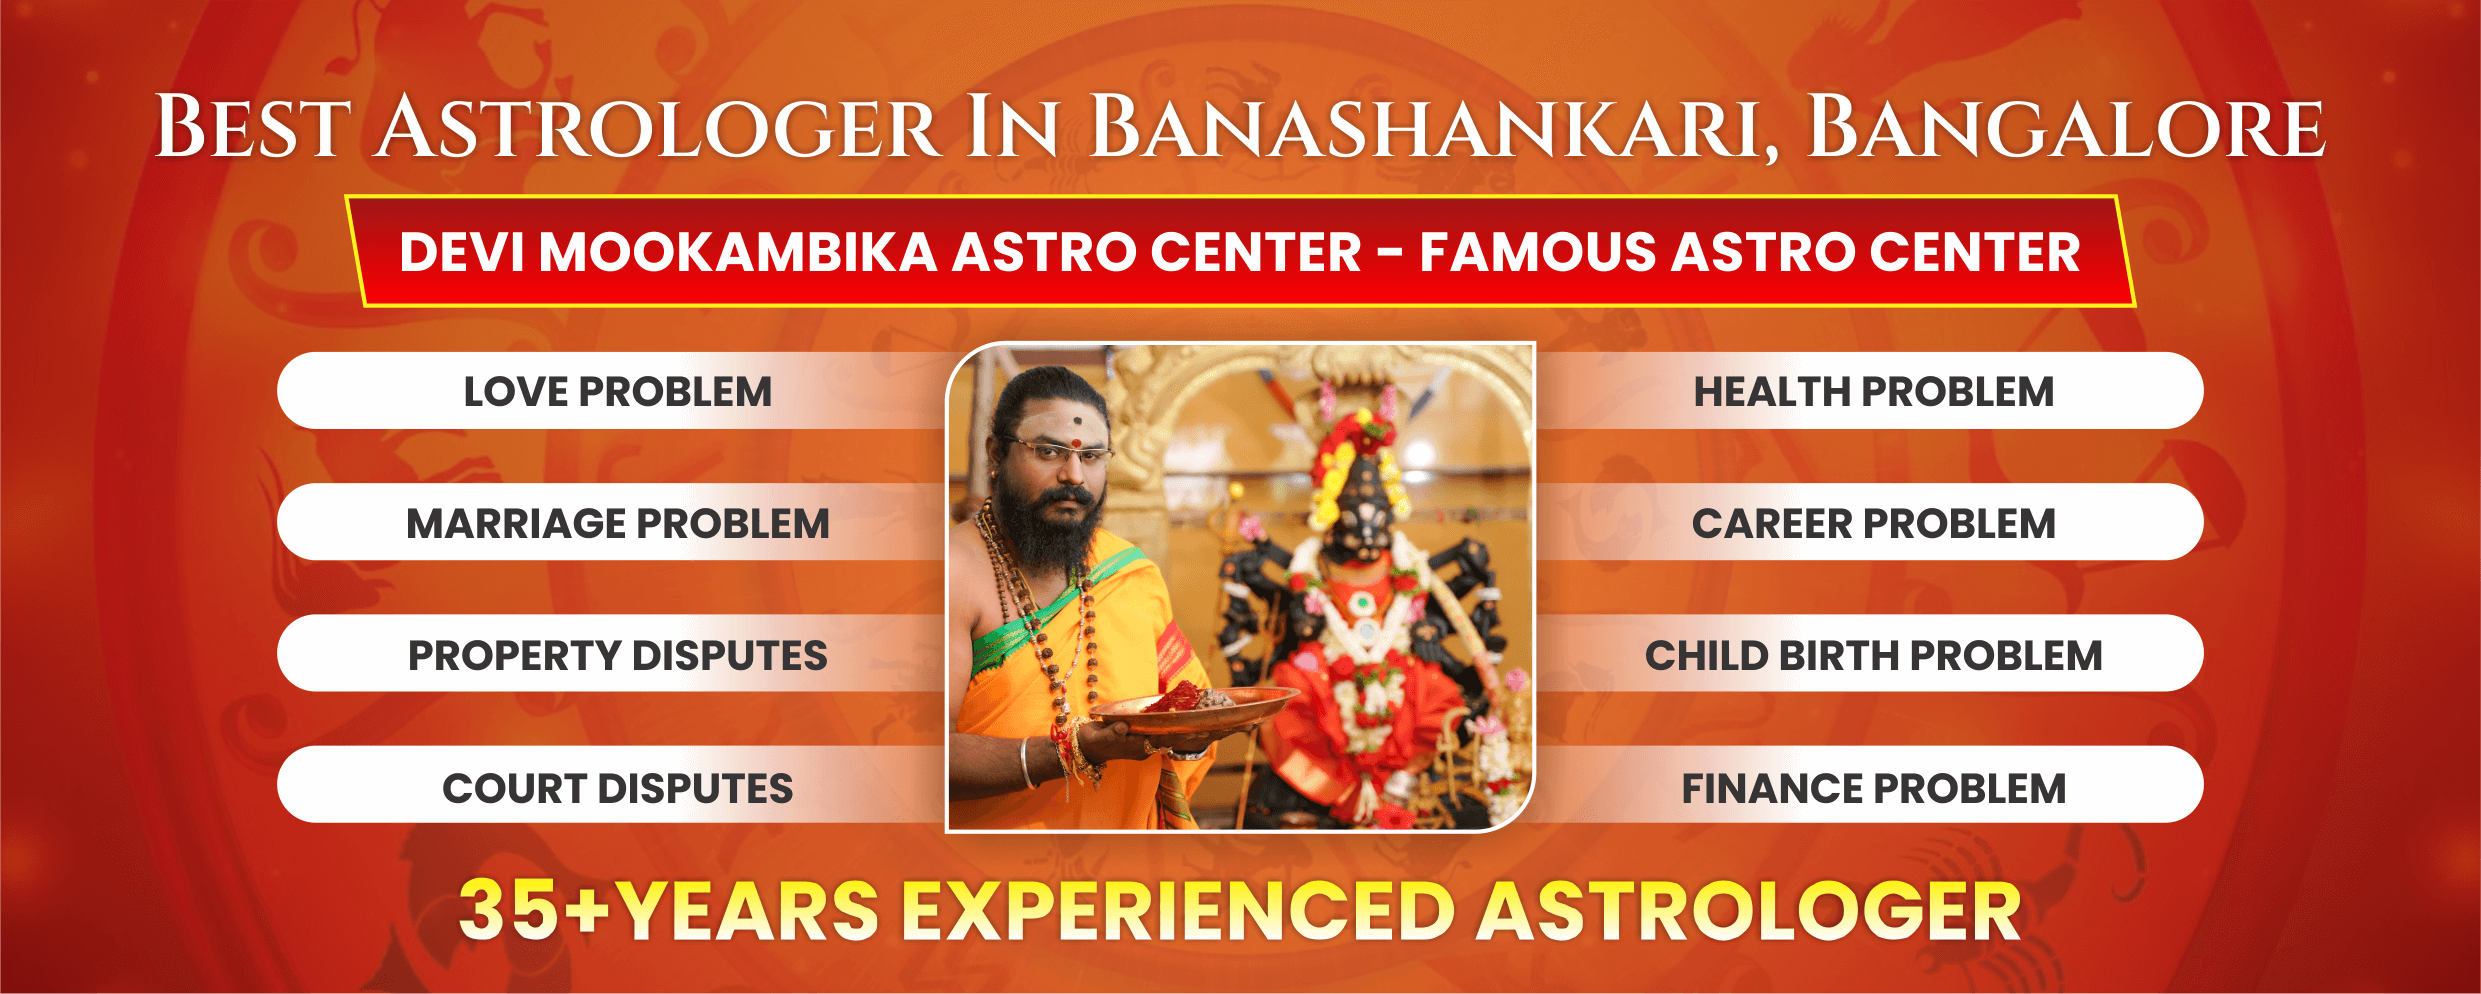 Best Astrologer in Banaskankari Bangalore